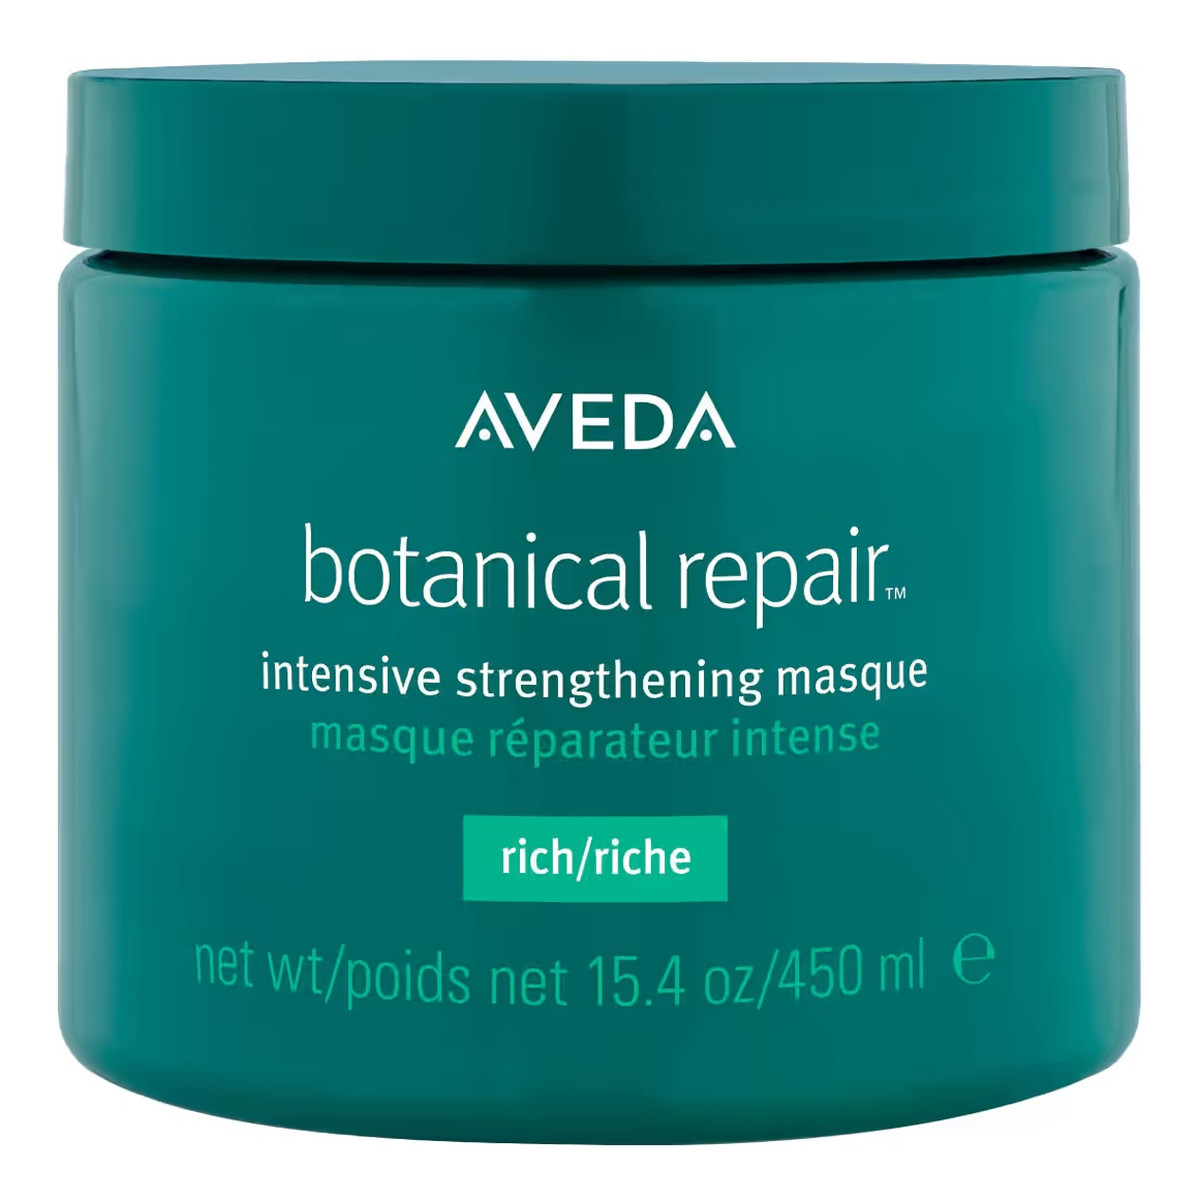 Aveda Botanical repair intensive strengthening masque rich intensywnie wzmacniająca maska do włosów 450ml